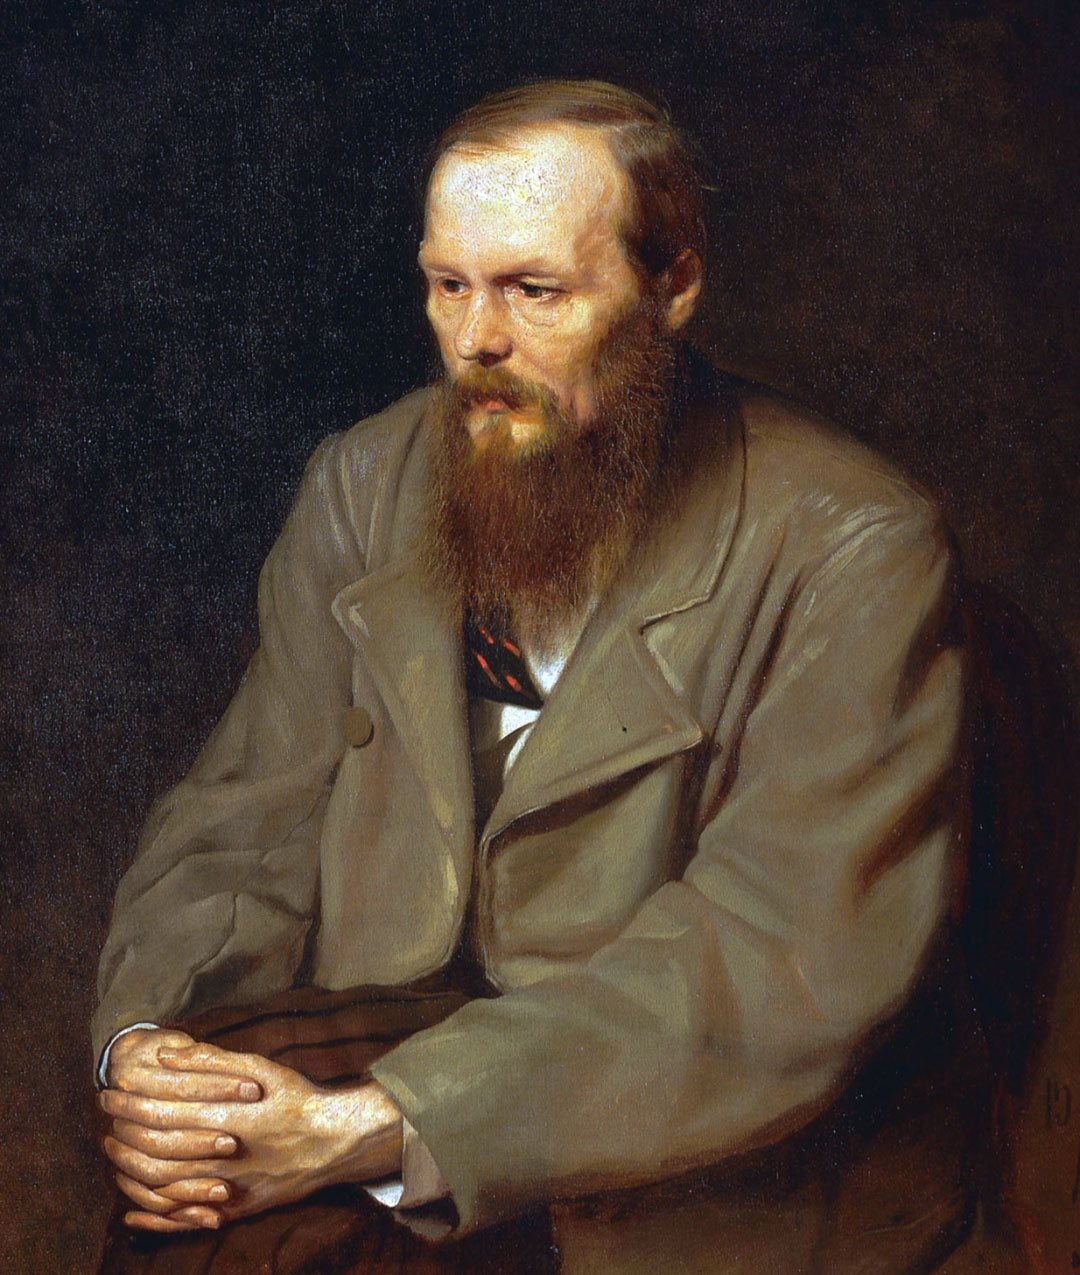  Fyodor Dostoevsky, biografi: sejarah, kehidupan dan karya